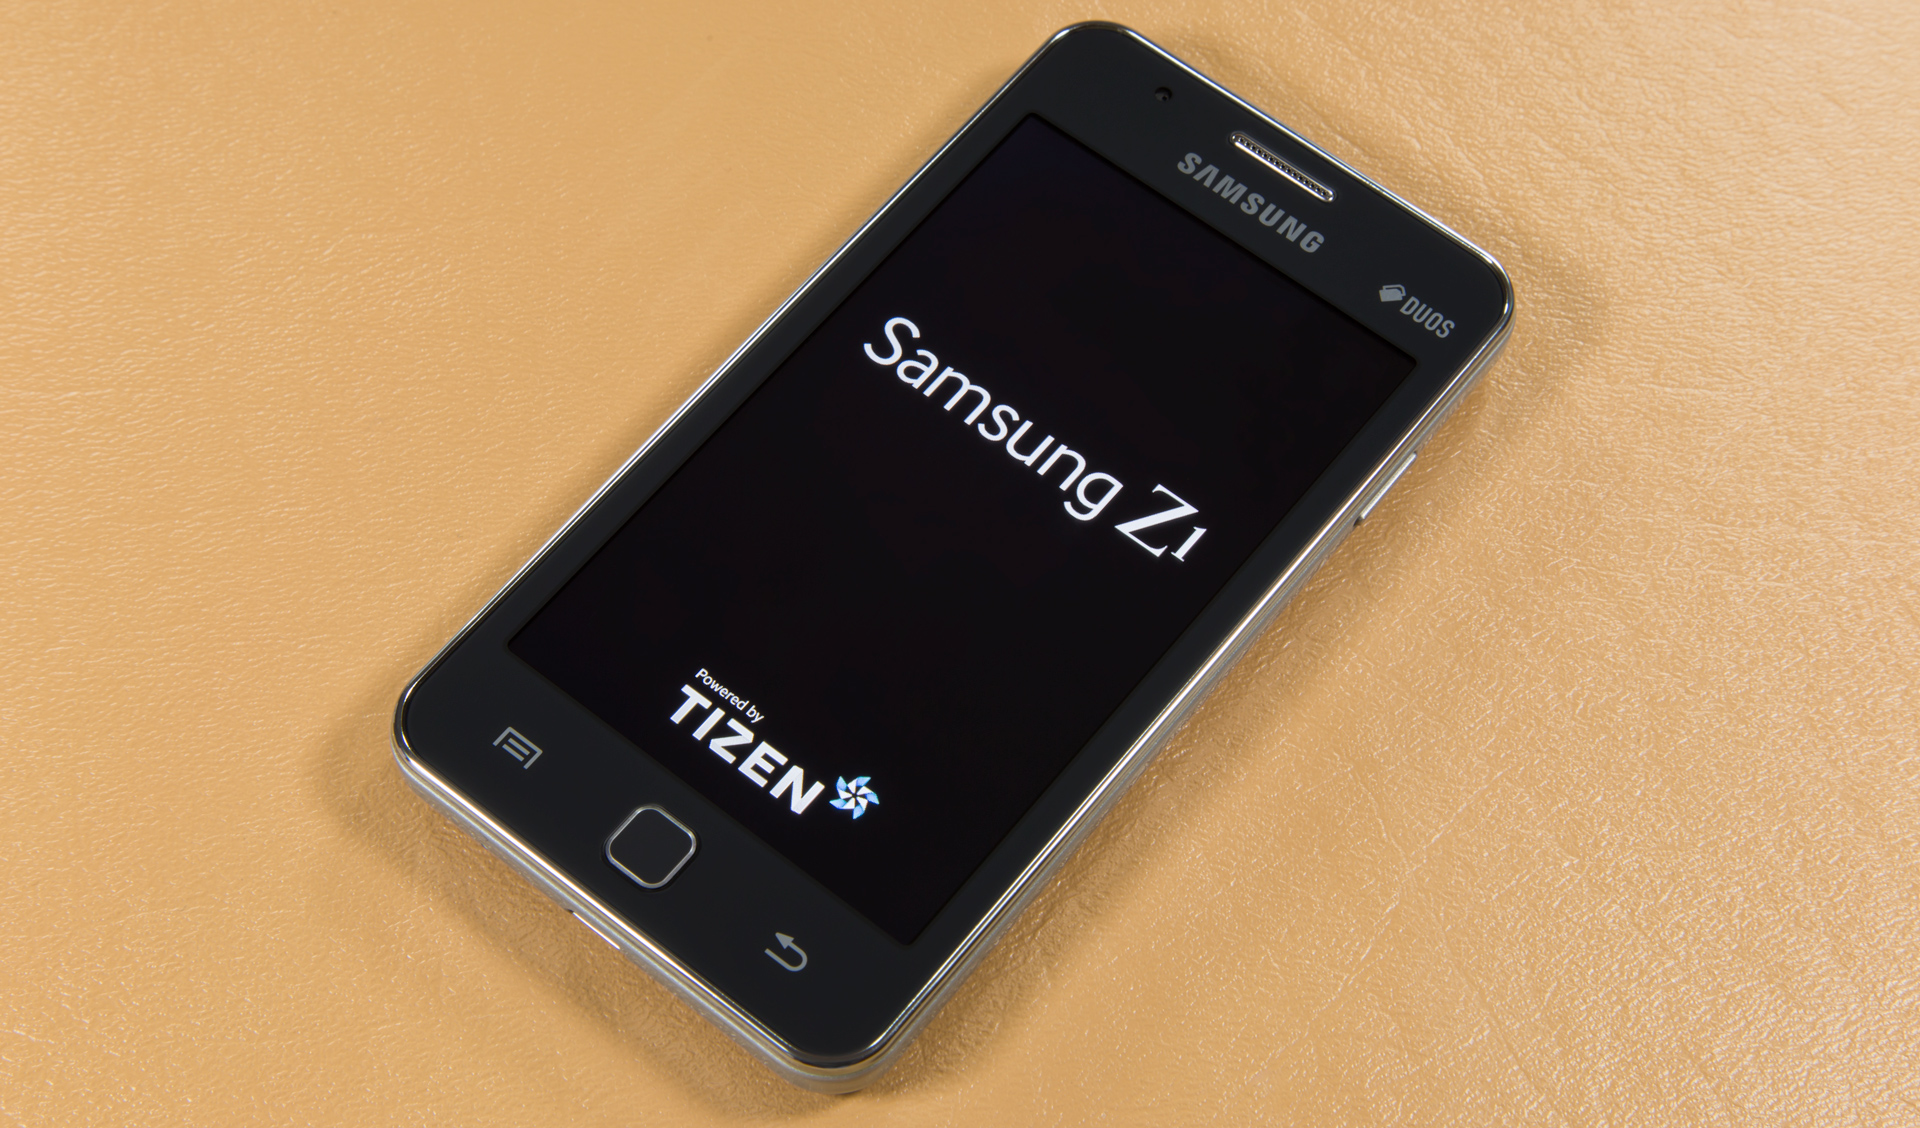 The Samsung Z1